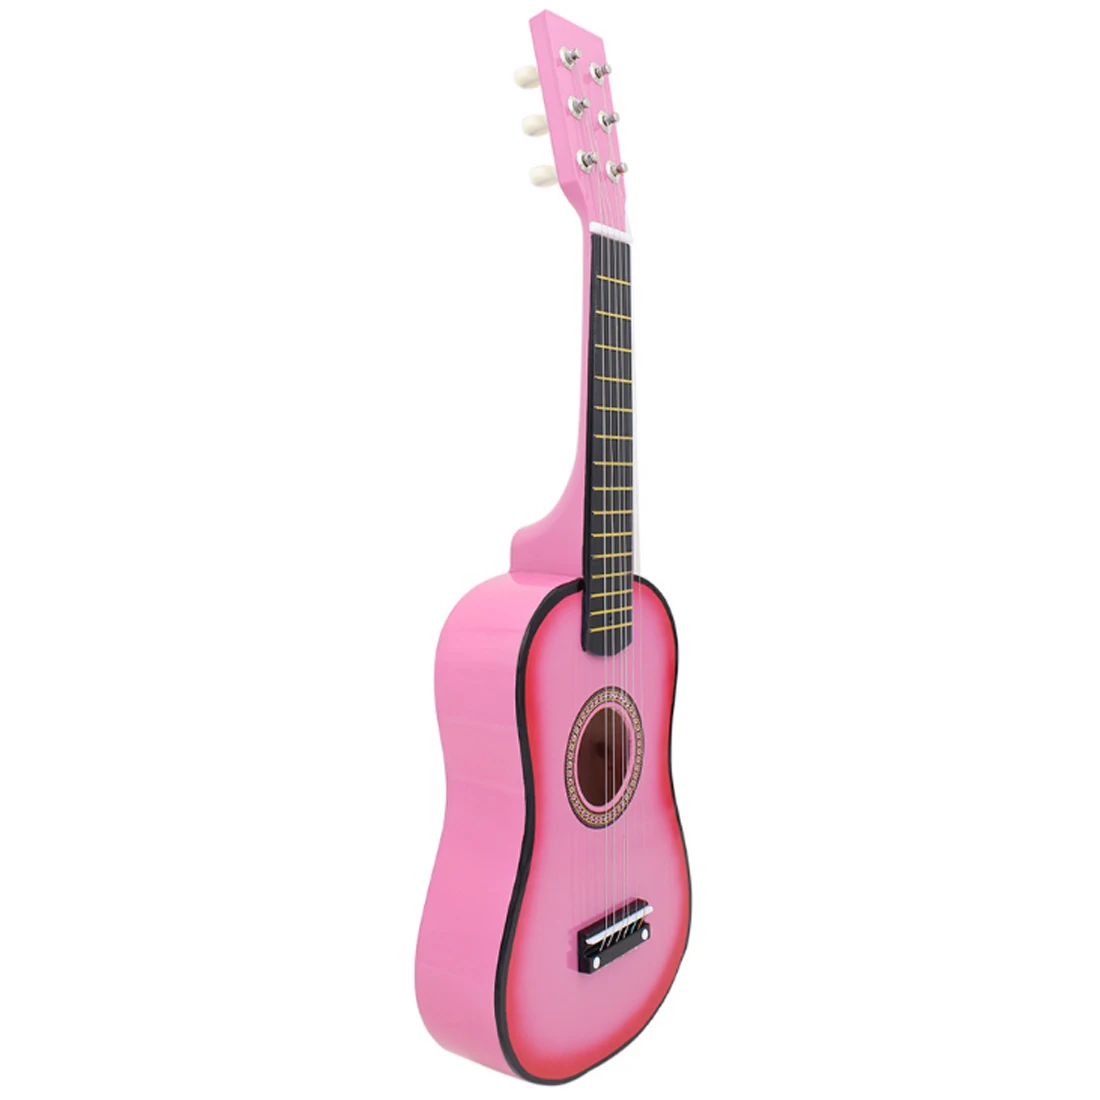 23 дюйма детские деревянные 6 струны гитара музыкальный инструмент игрушки для начинающих - Цвет: Розовый